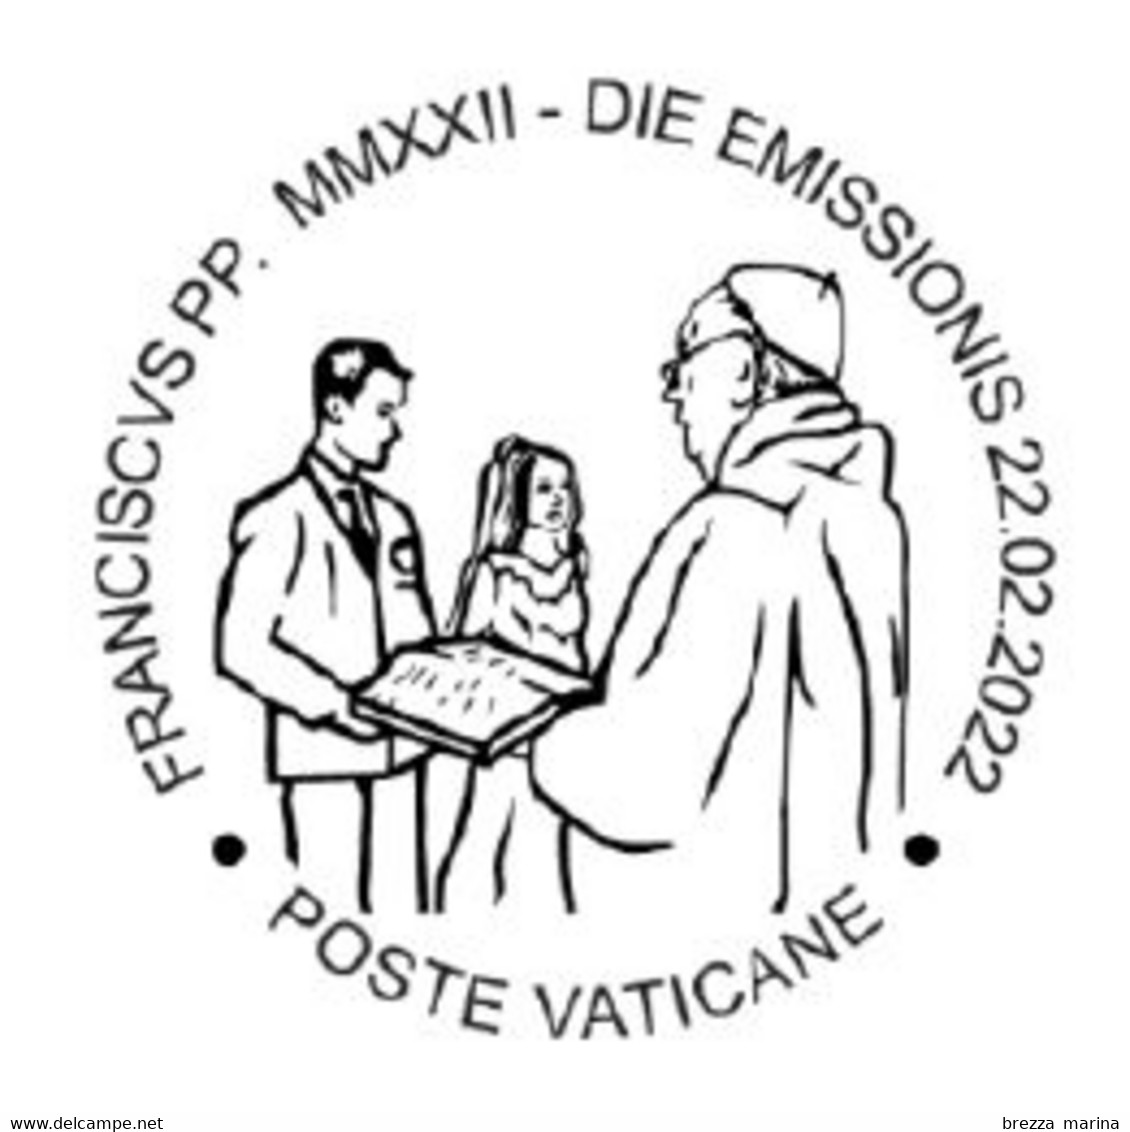 Nuovo - MNH - VATICANO - 2022 - Pontificato Di Papa Francesco MMXXII – Anno Della Famiglia - Bambini – 2.40 - Ungebraucht